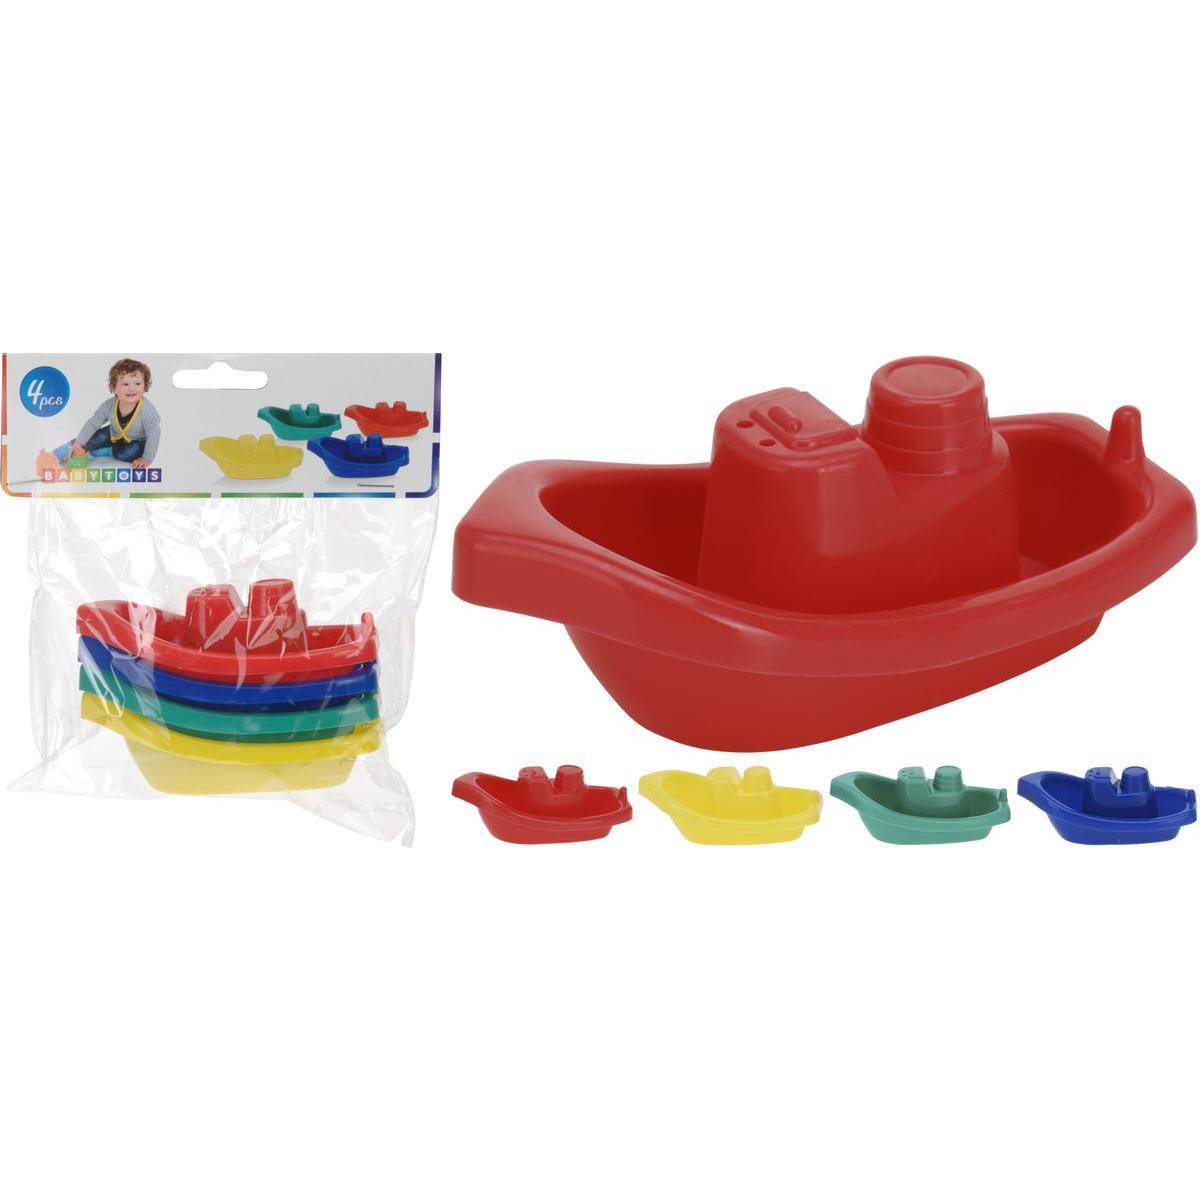 4 jouets de bain bateau - Rouge, jaune, vert et bleu